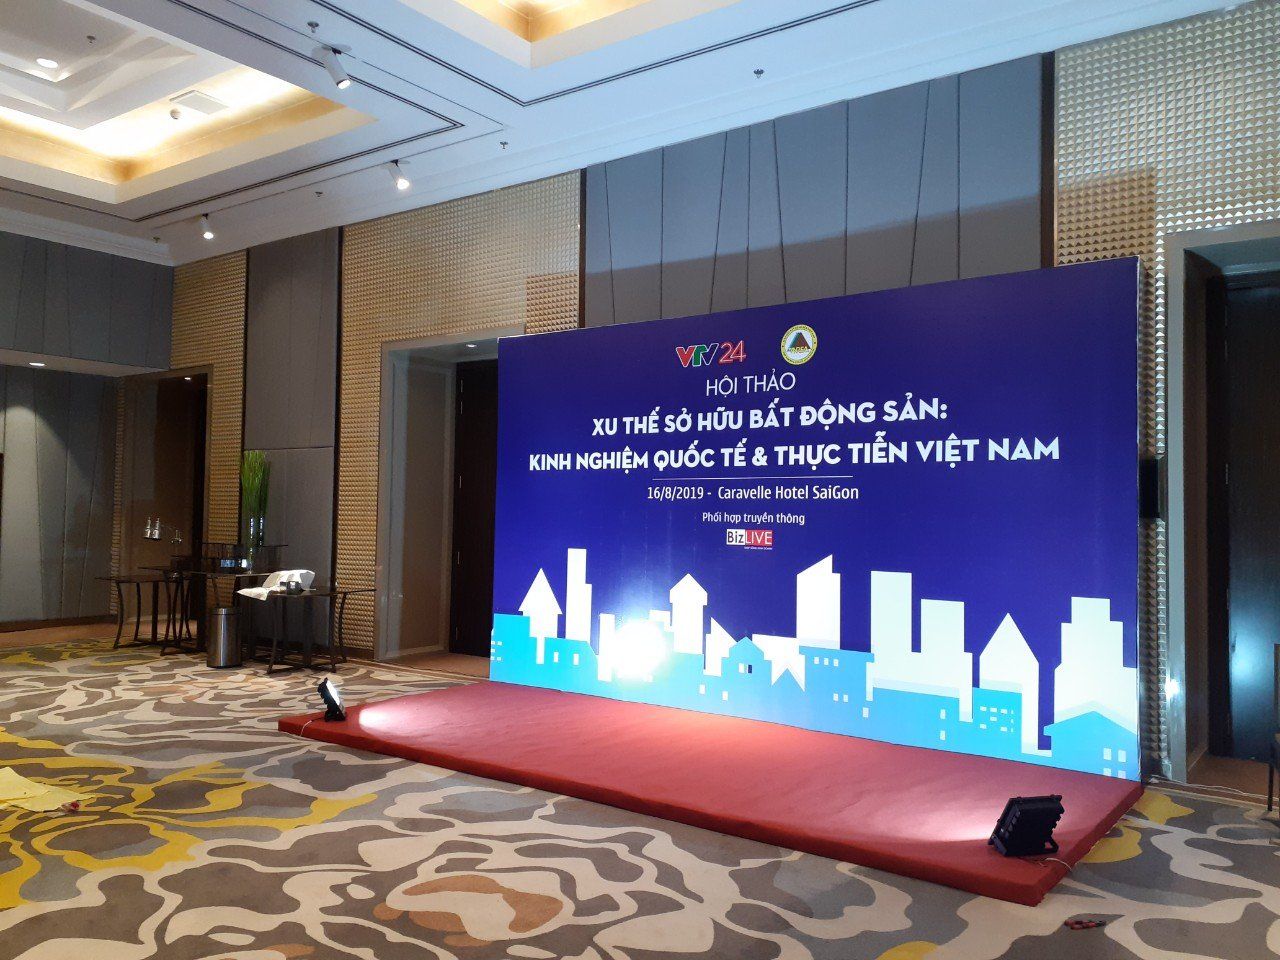 Top 3+ Best Event Agencies in Hanoi